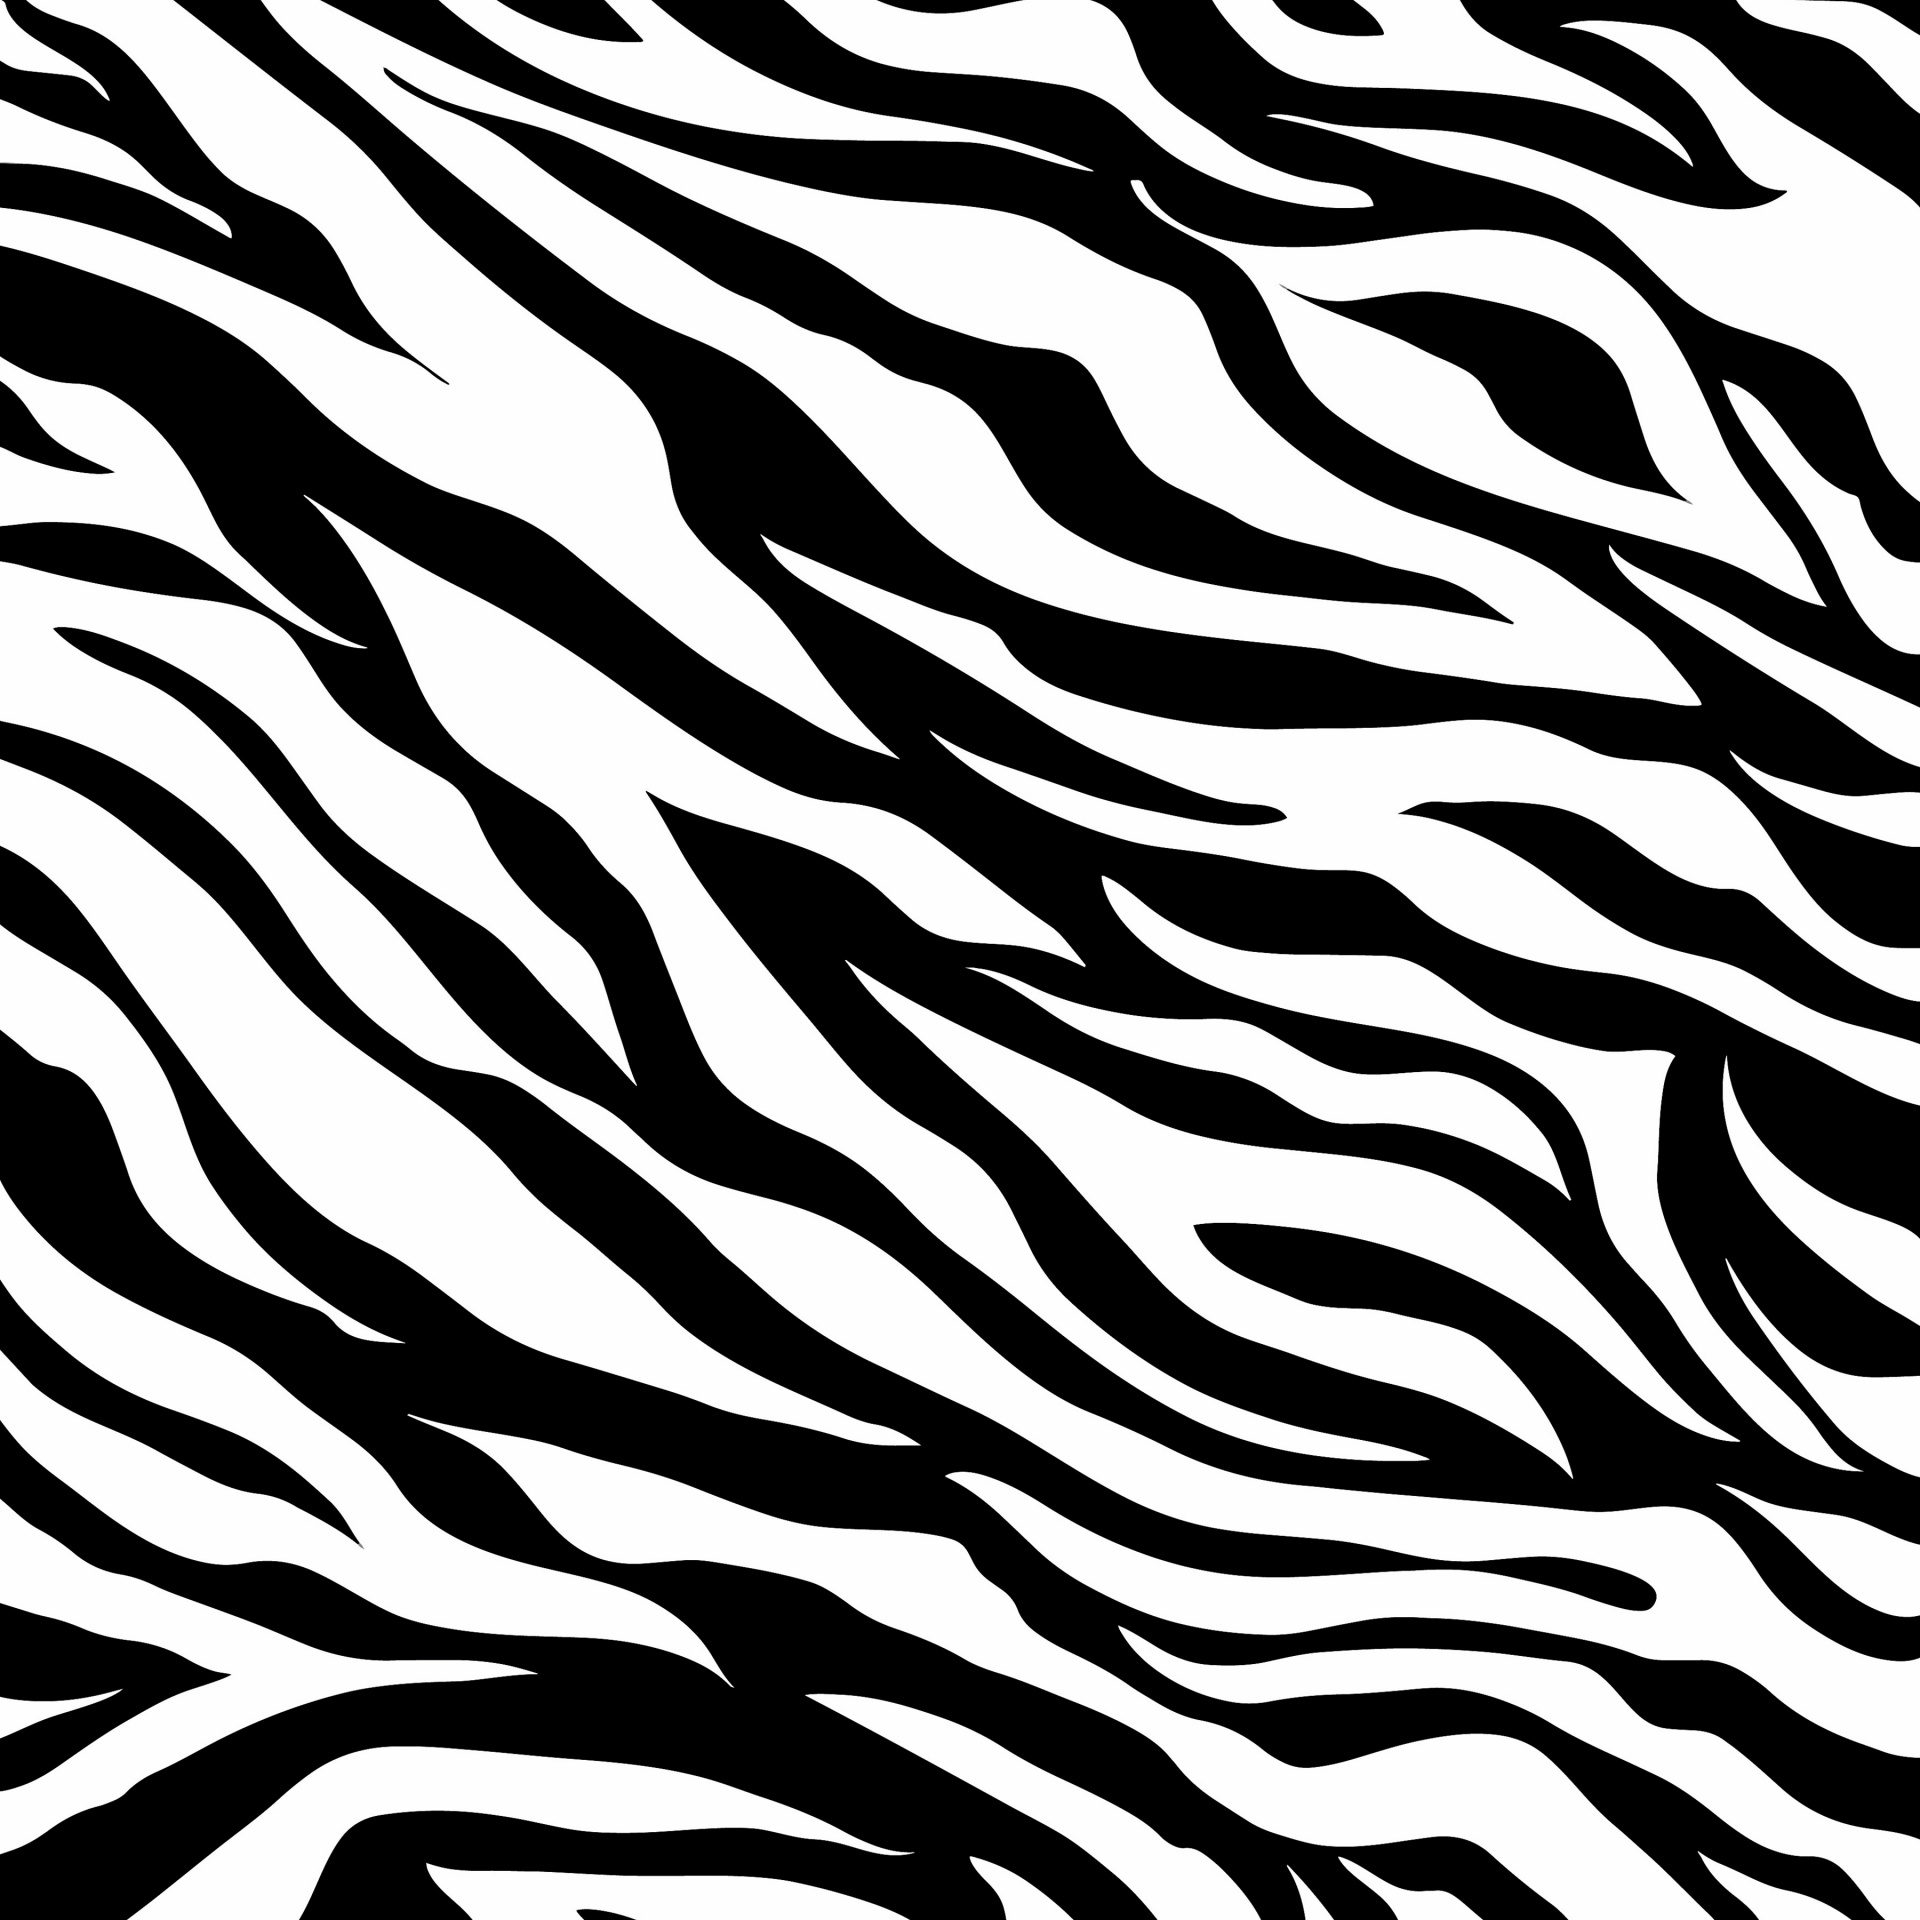 Zebra Haut Muster drucken